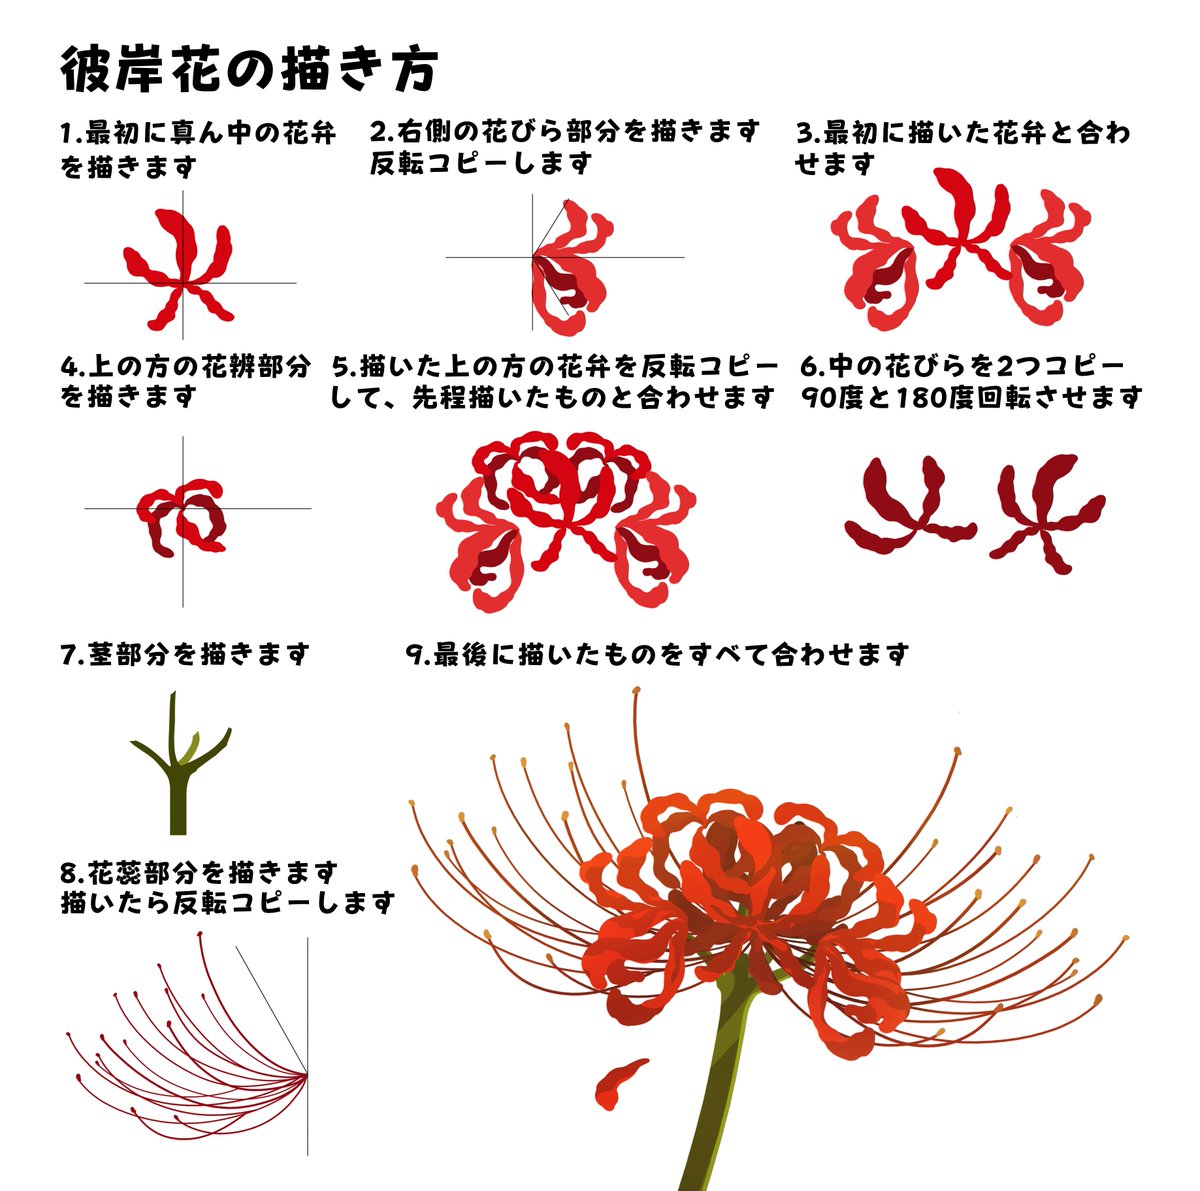 Twoucan 桜の描き方 の注目ツイート イラスト マンガ